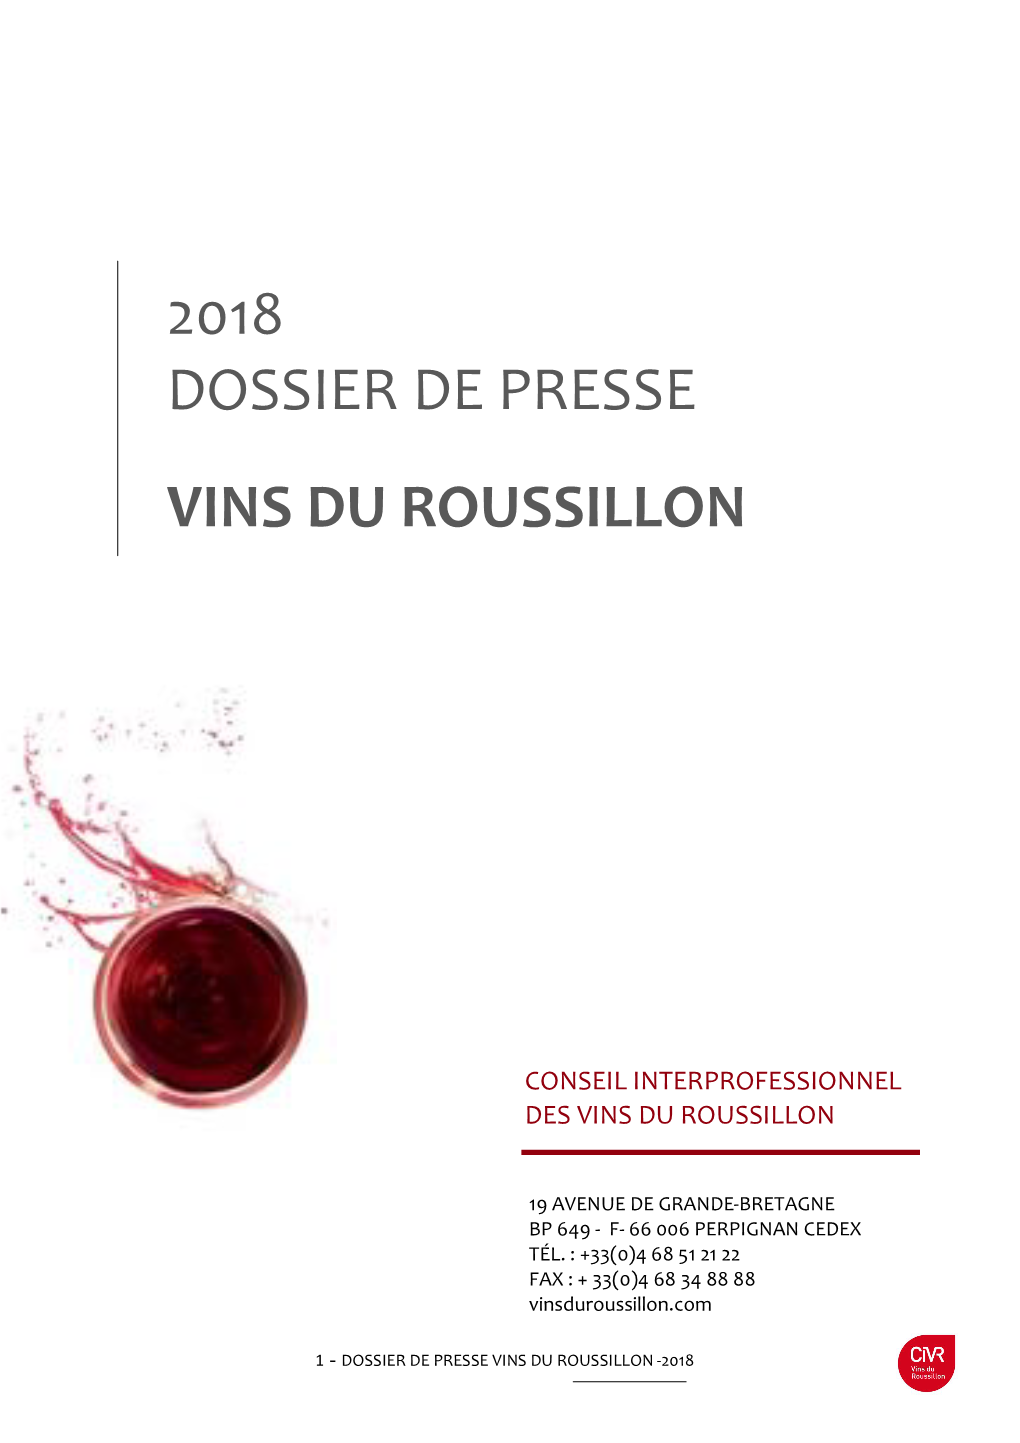 2018 Dossier De Presse Vins Du Roussillon